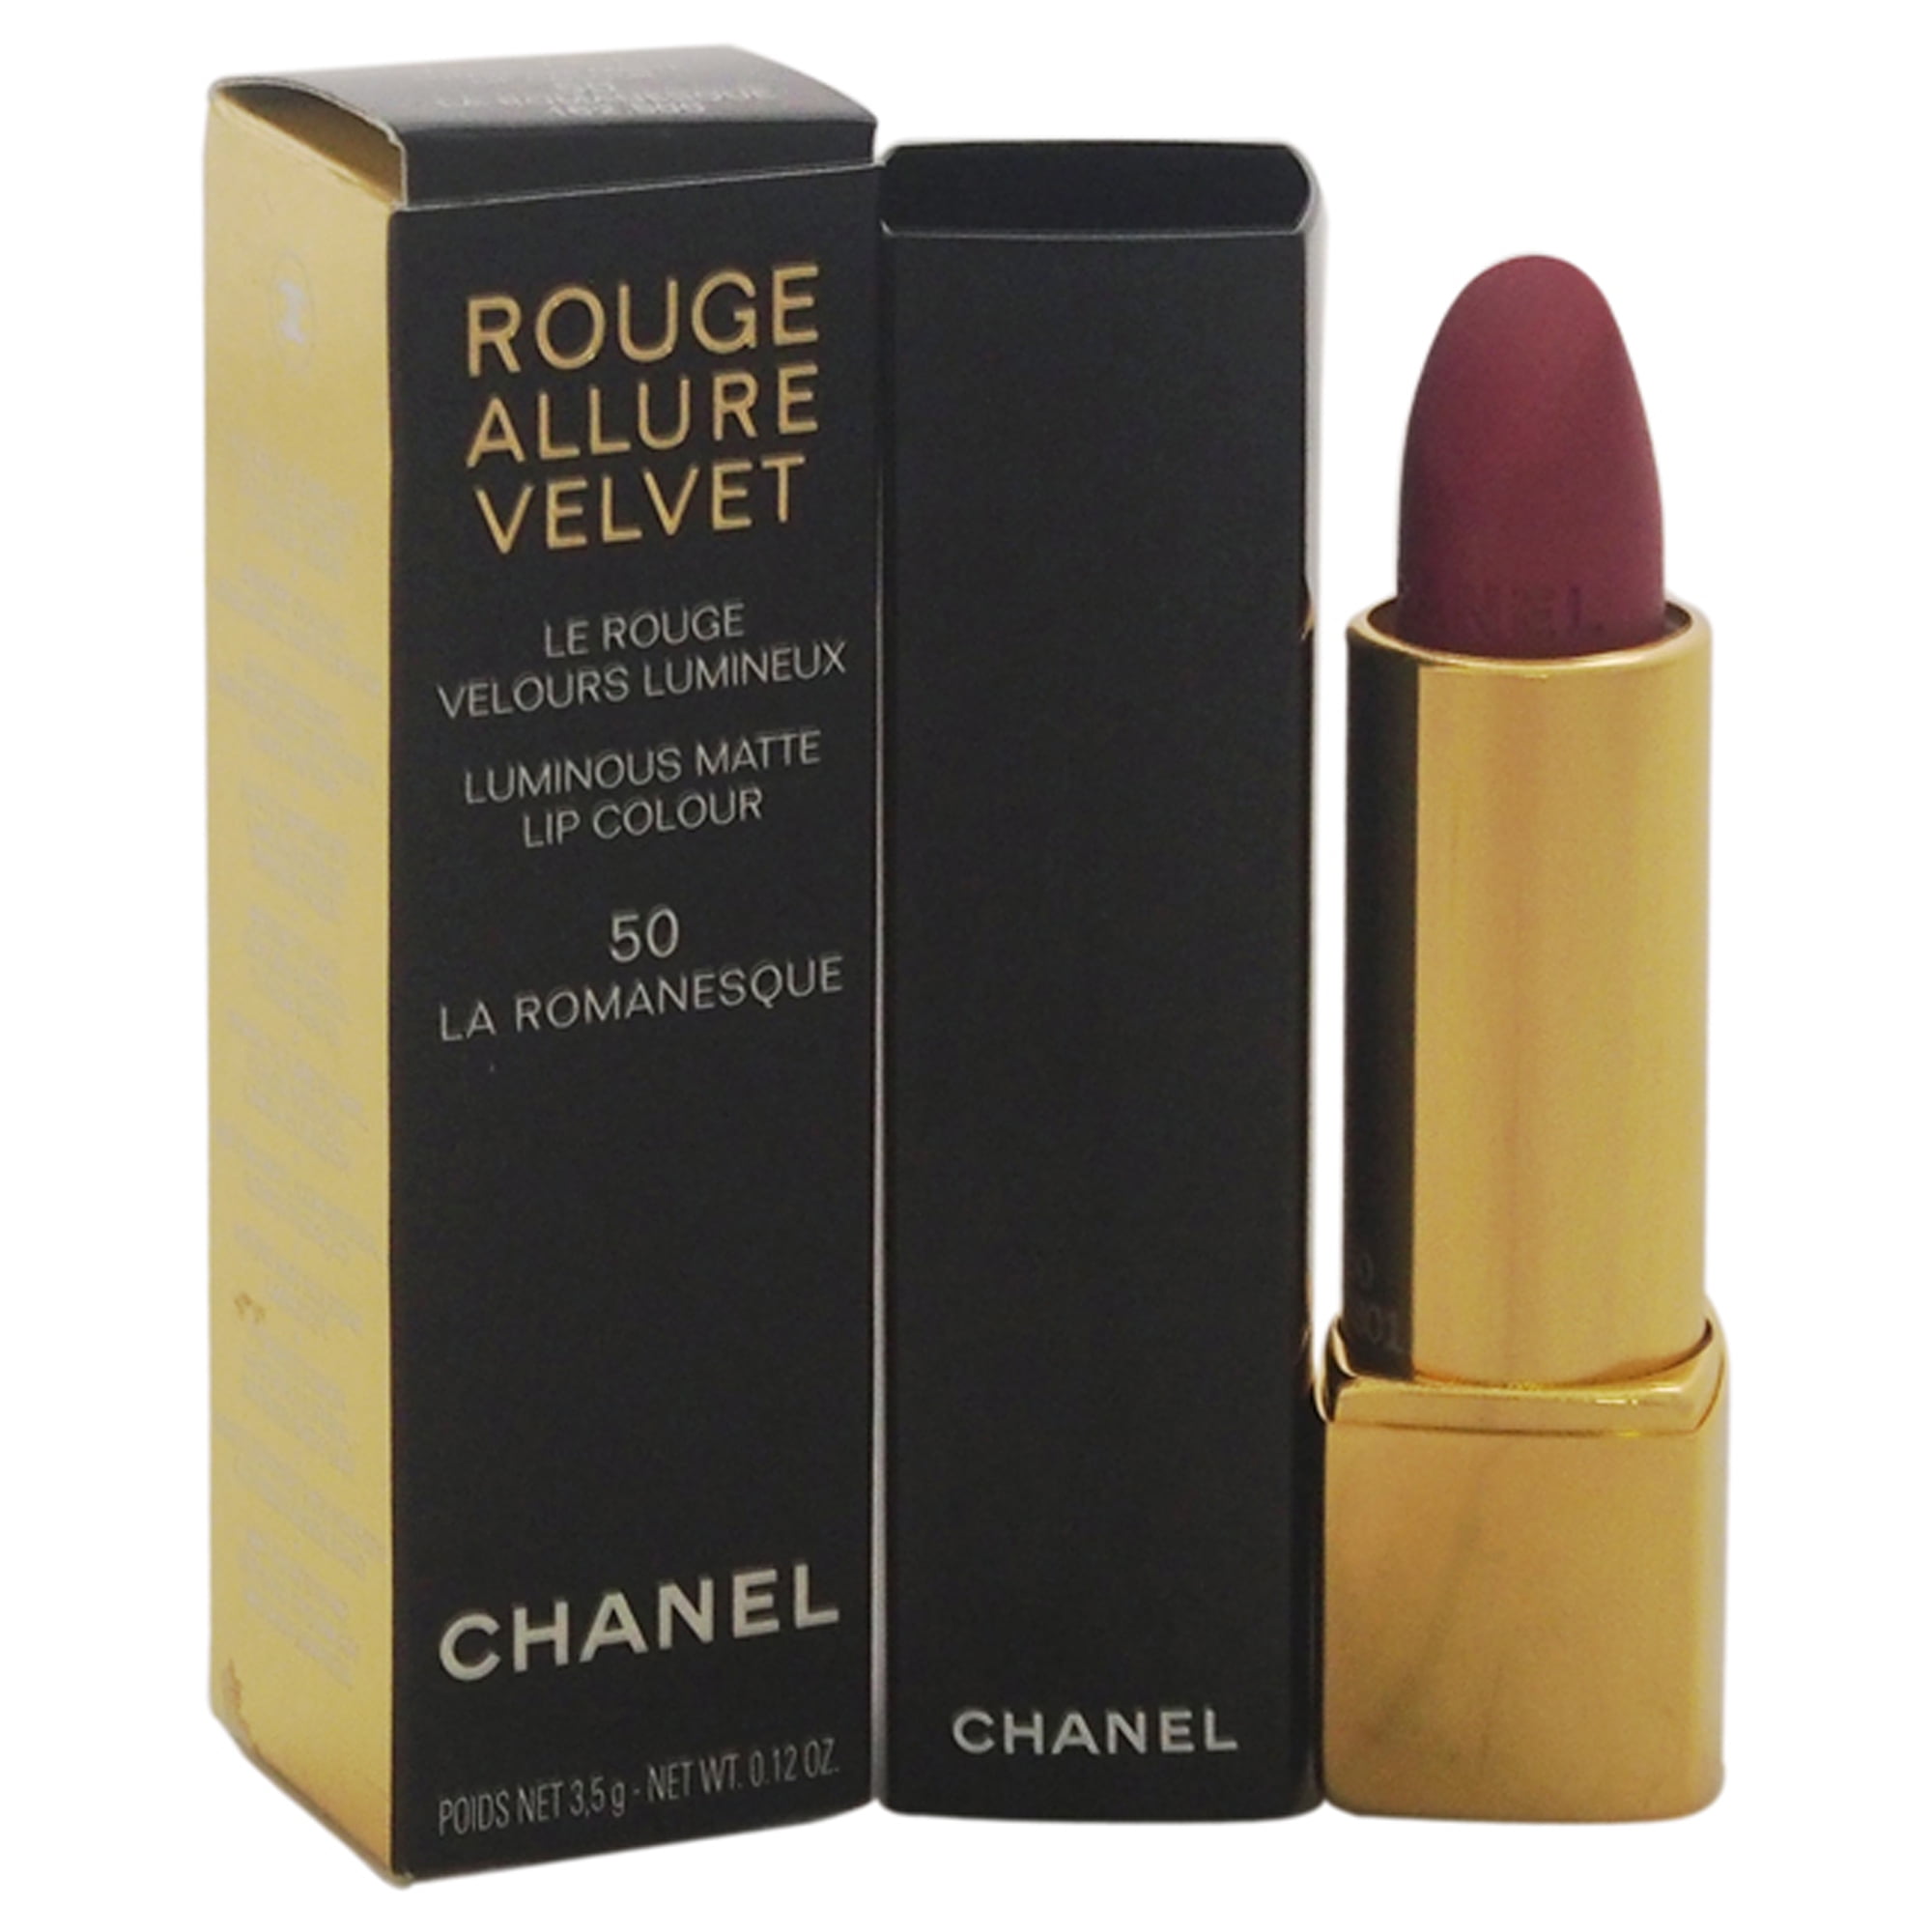 Chanel rouge allure velevet #50 la romanesque